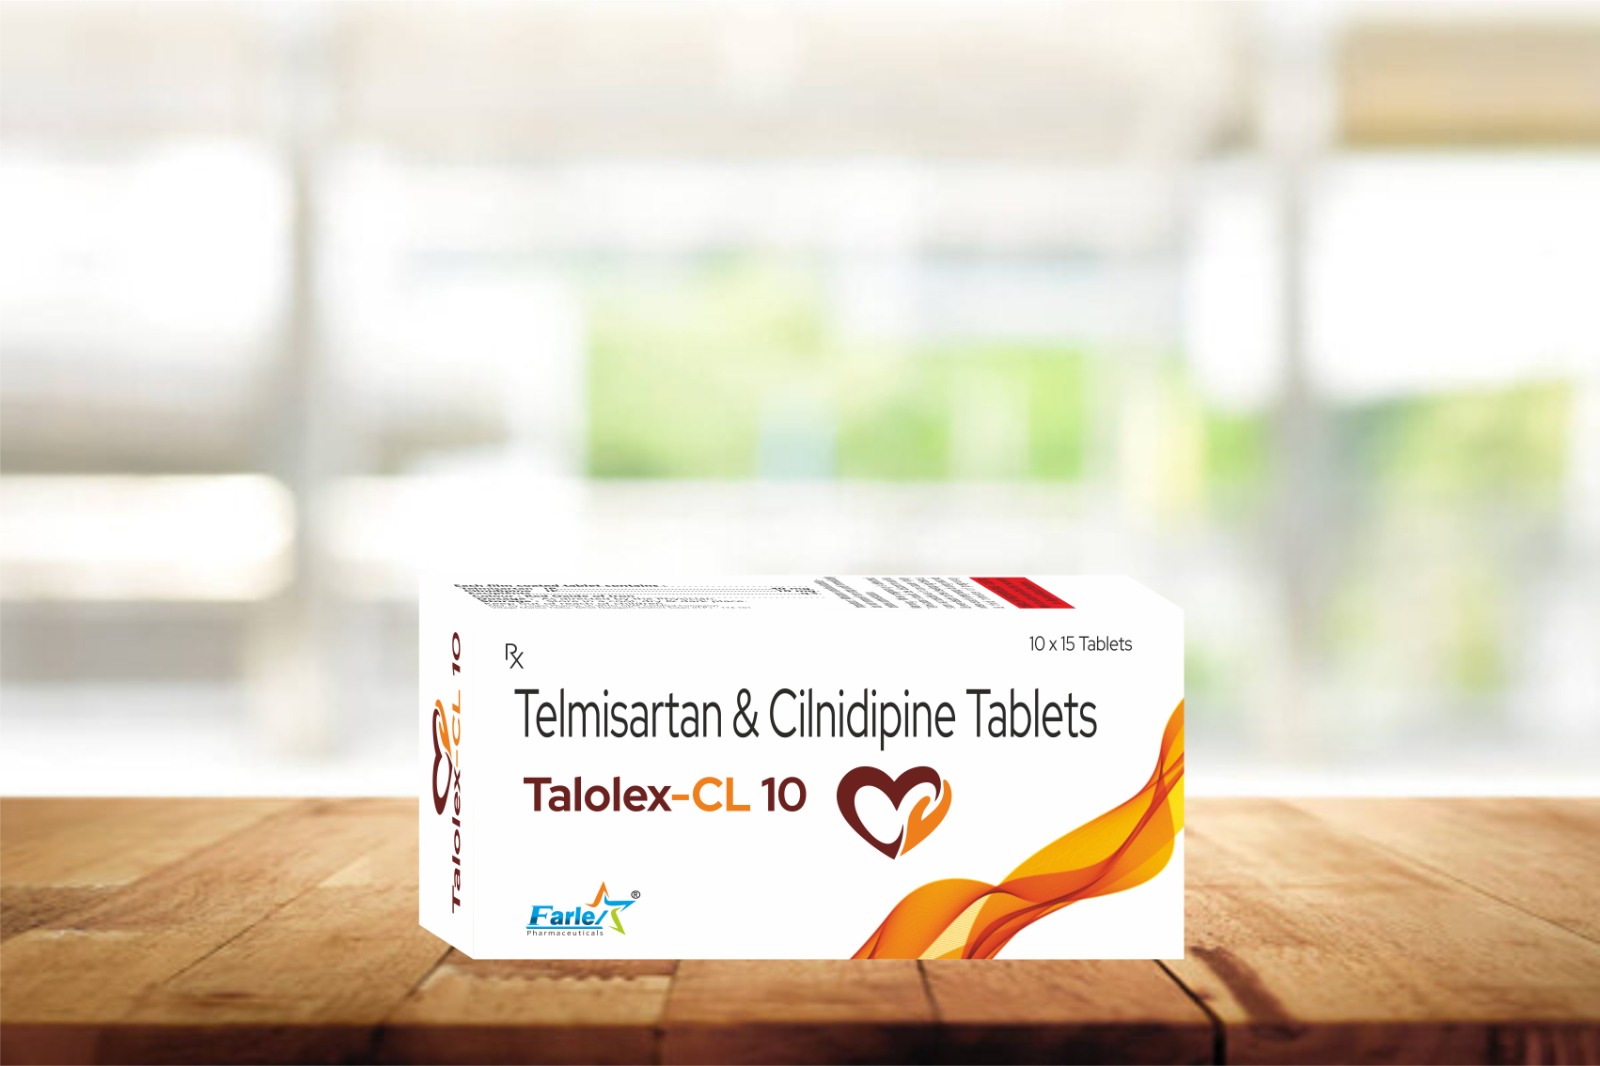 TALOLEX-CL 10